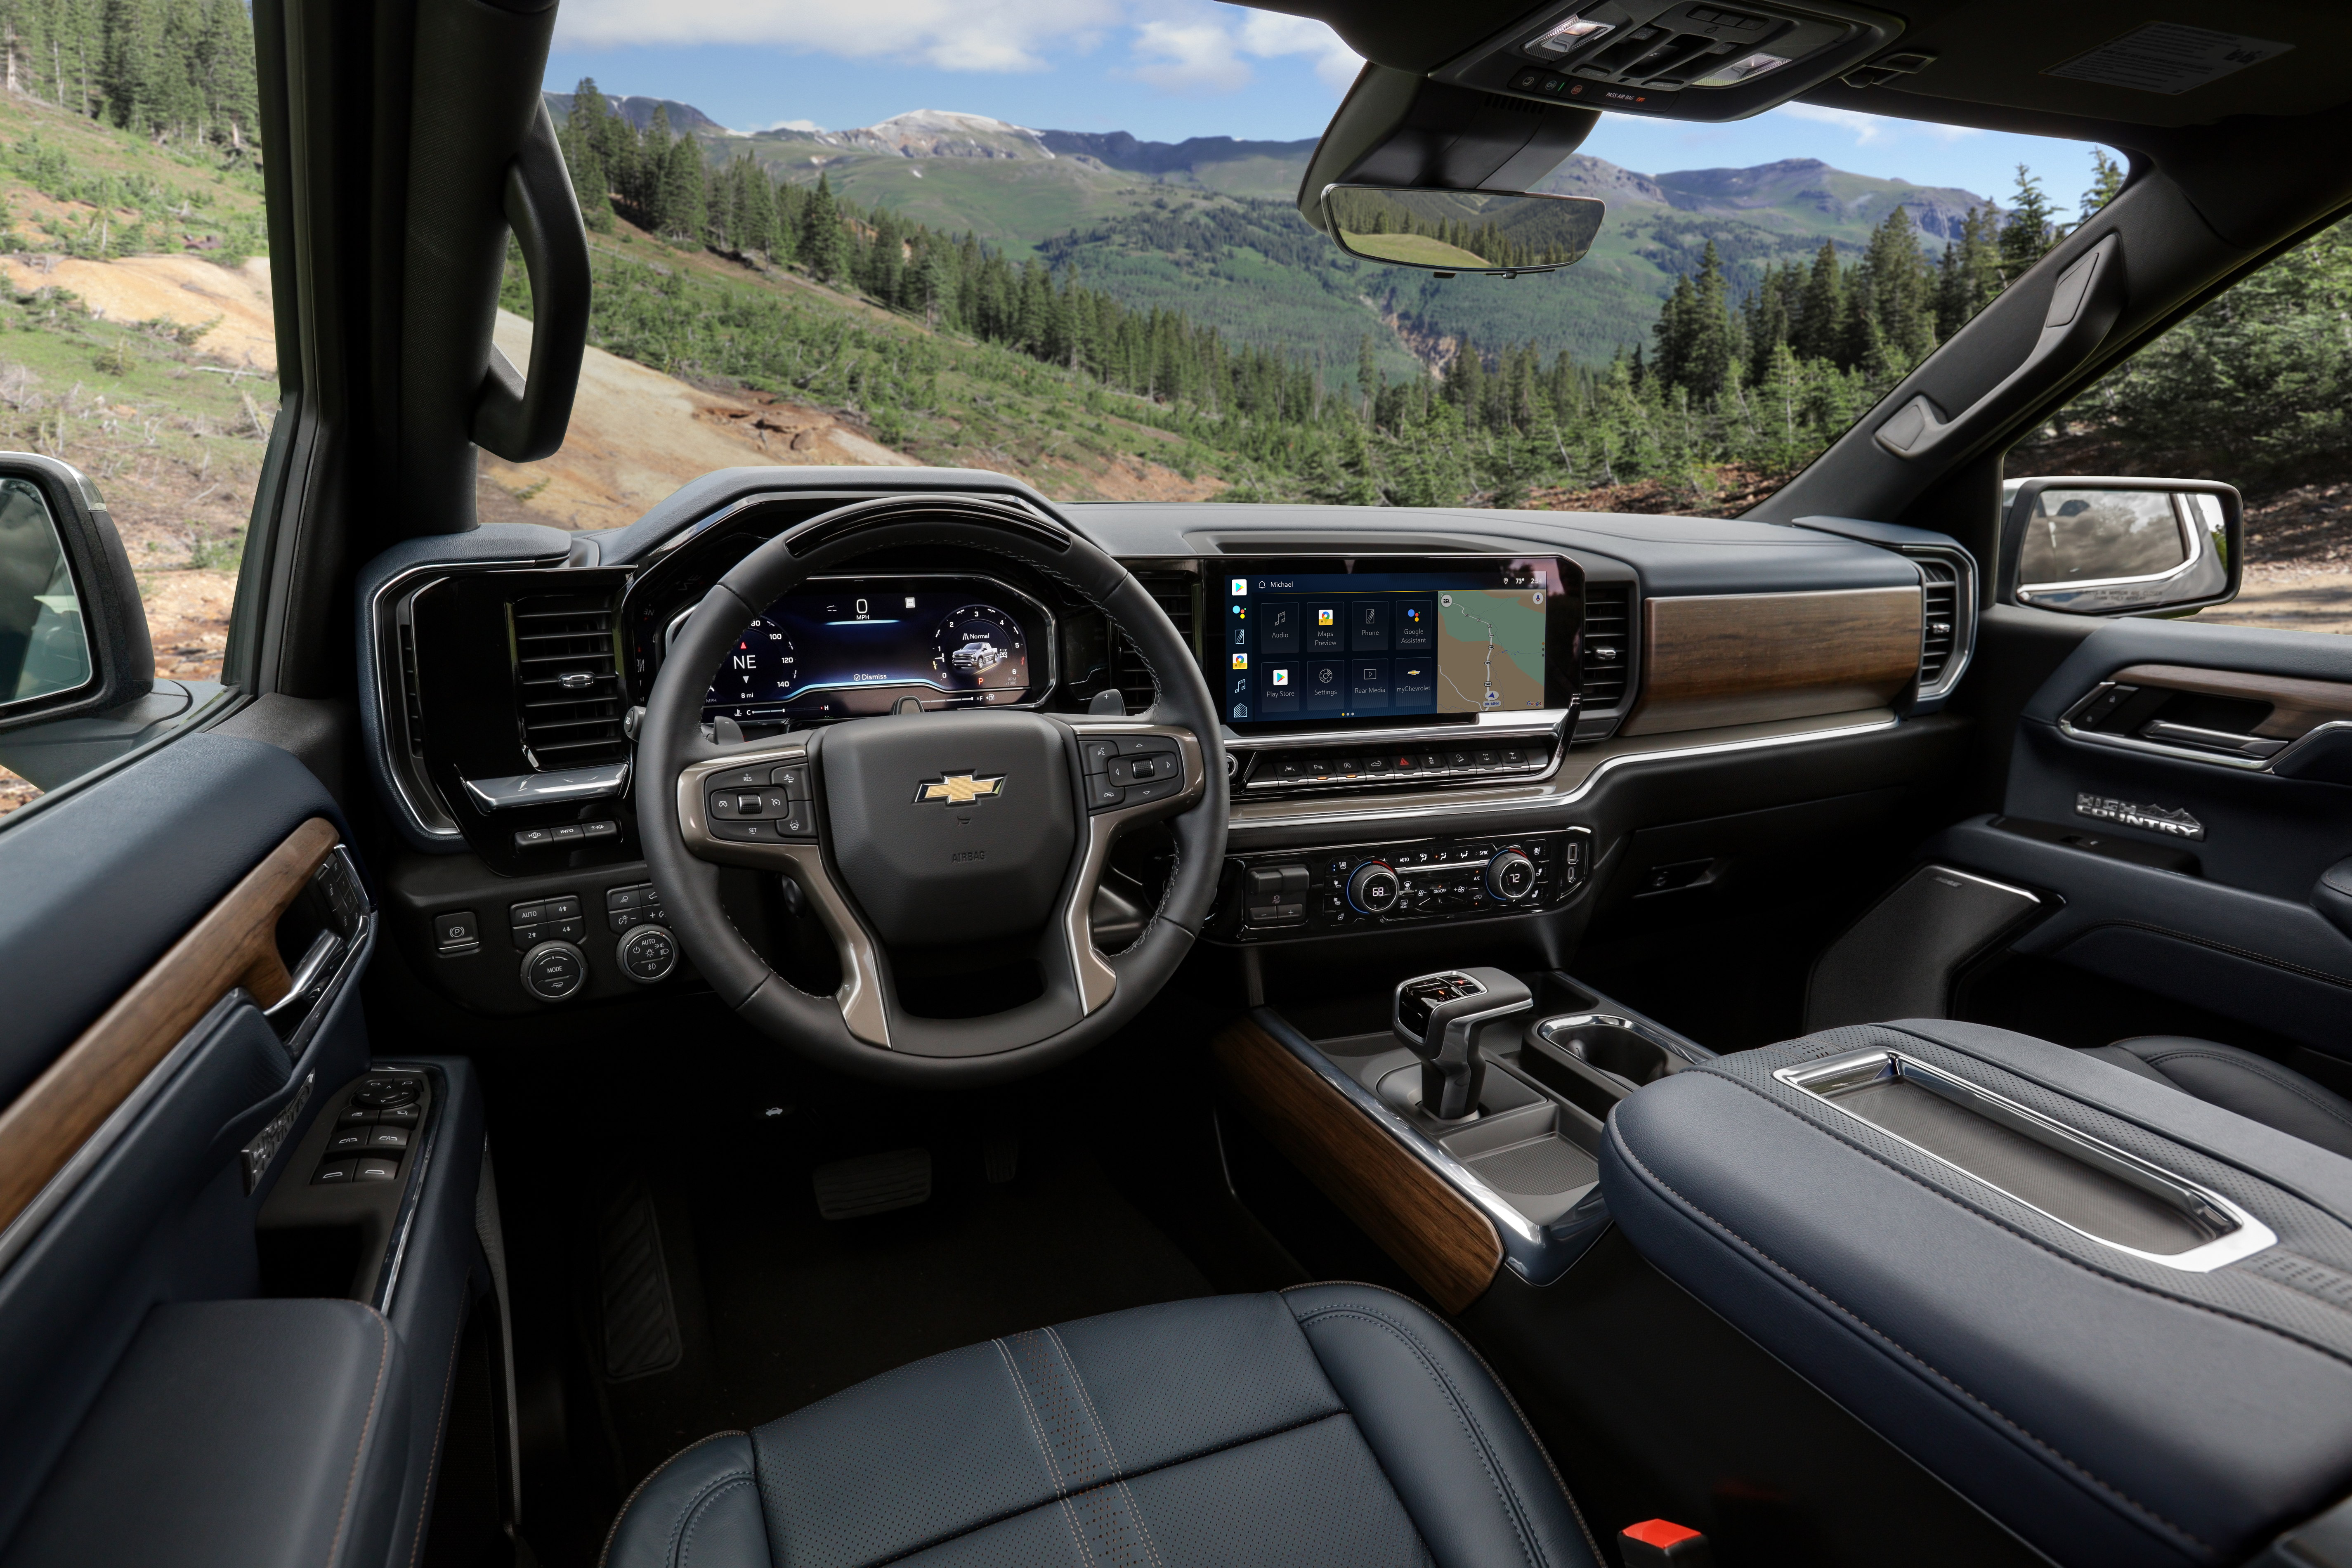 2022-Chevrolet-Silverado-HighCountry-interior.jpg